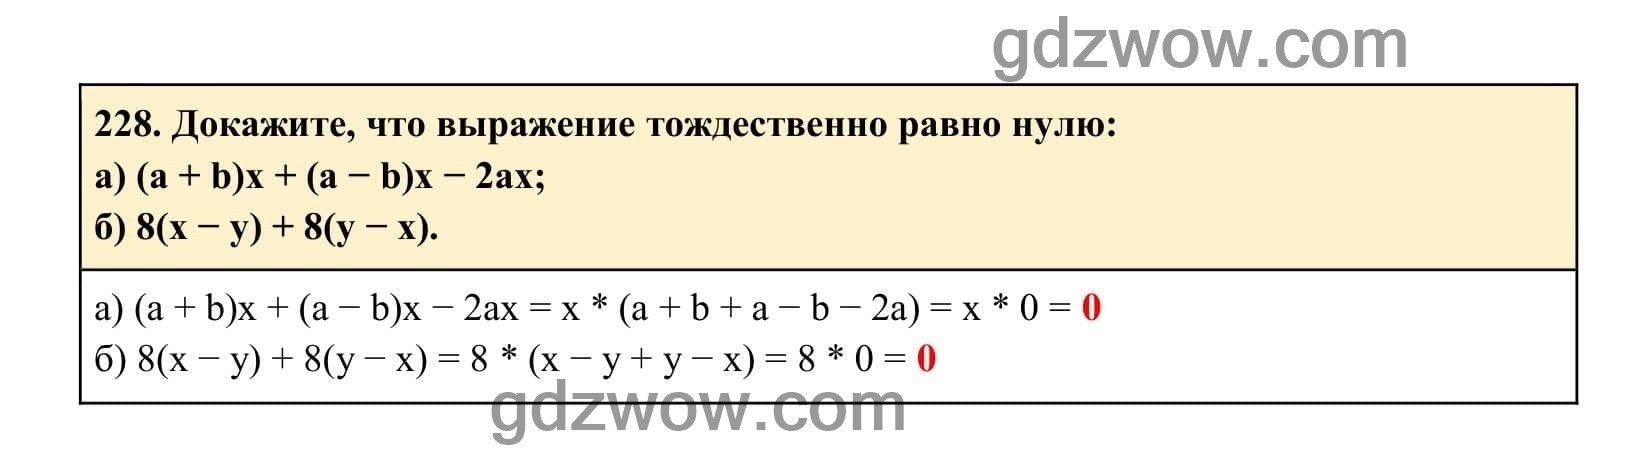 Упражнение 228 - ГДЗ по Алгебре 7 класс Учебник Макарычев (решебник) - GDZwow